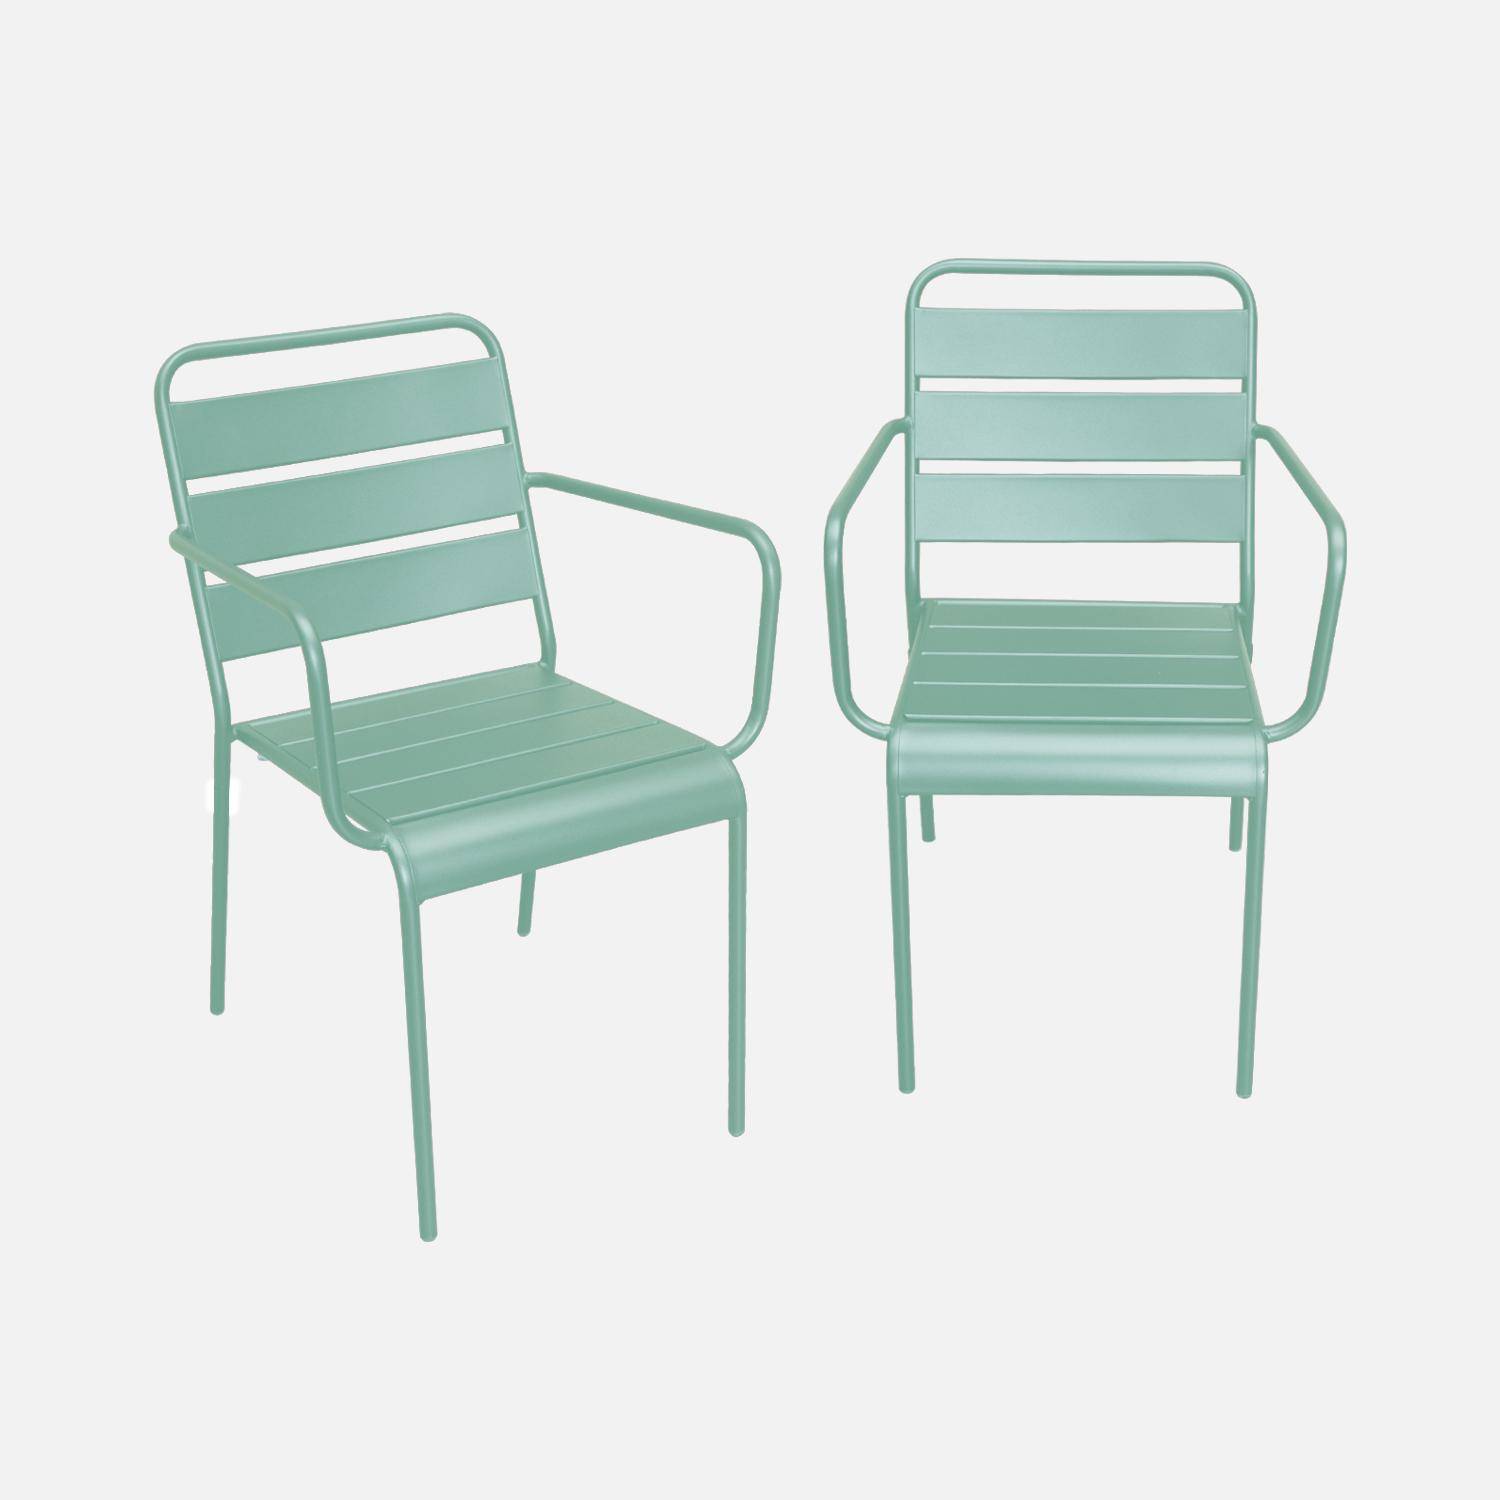 Lot de 2 fauteuils intérieur / extérieur en métal peinture antirouille empilables coloris vert jade,sweeek,Photo1